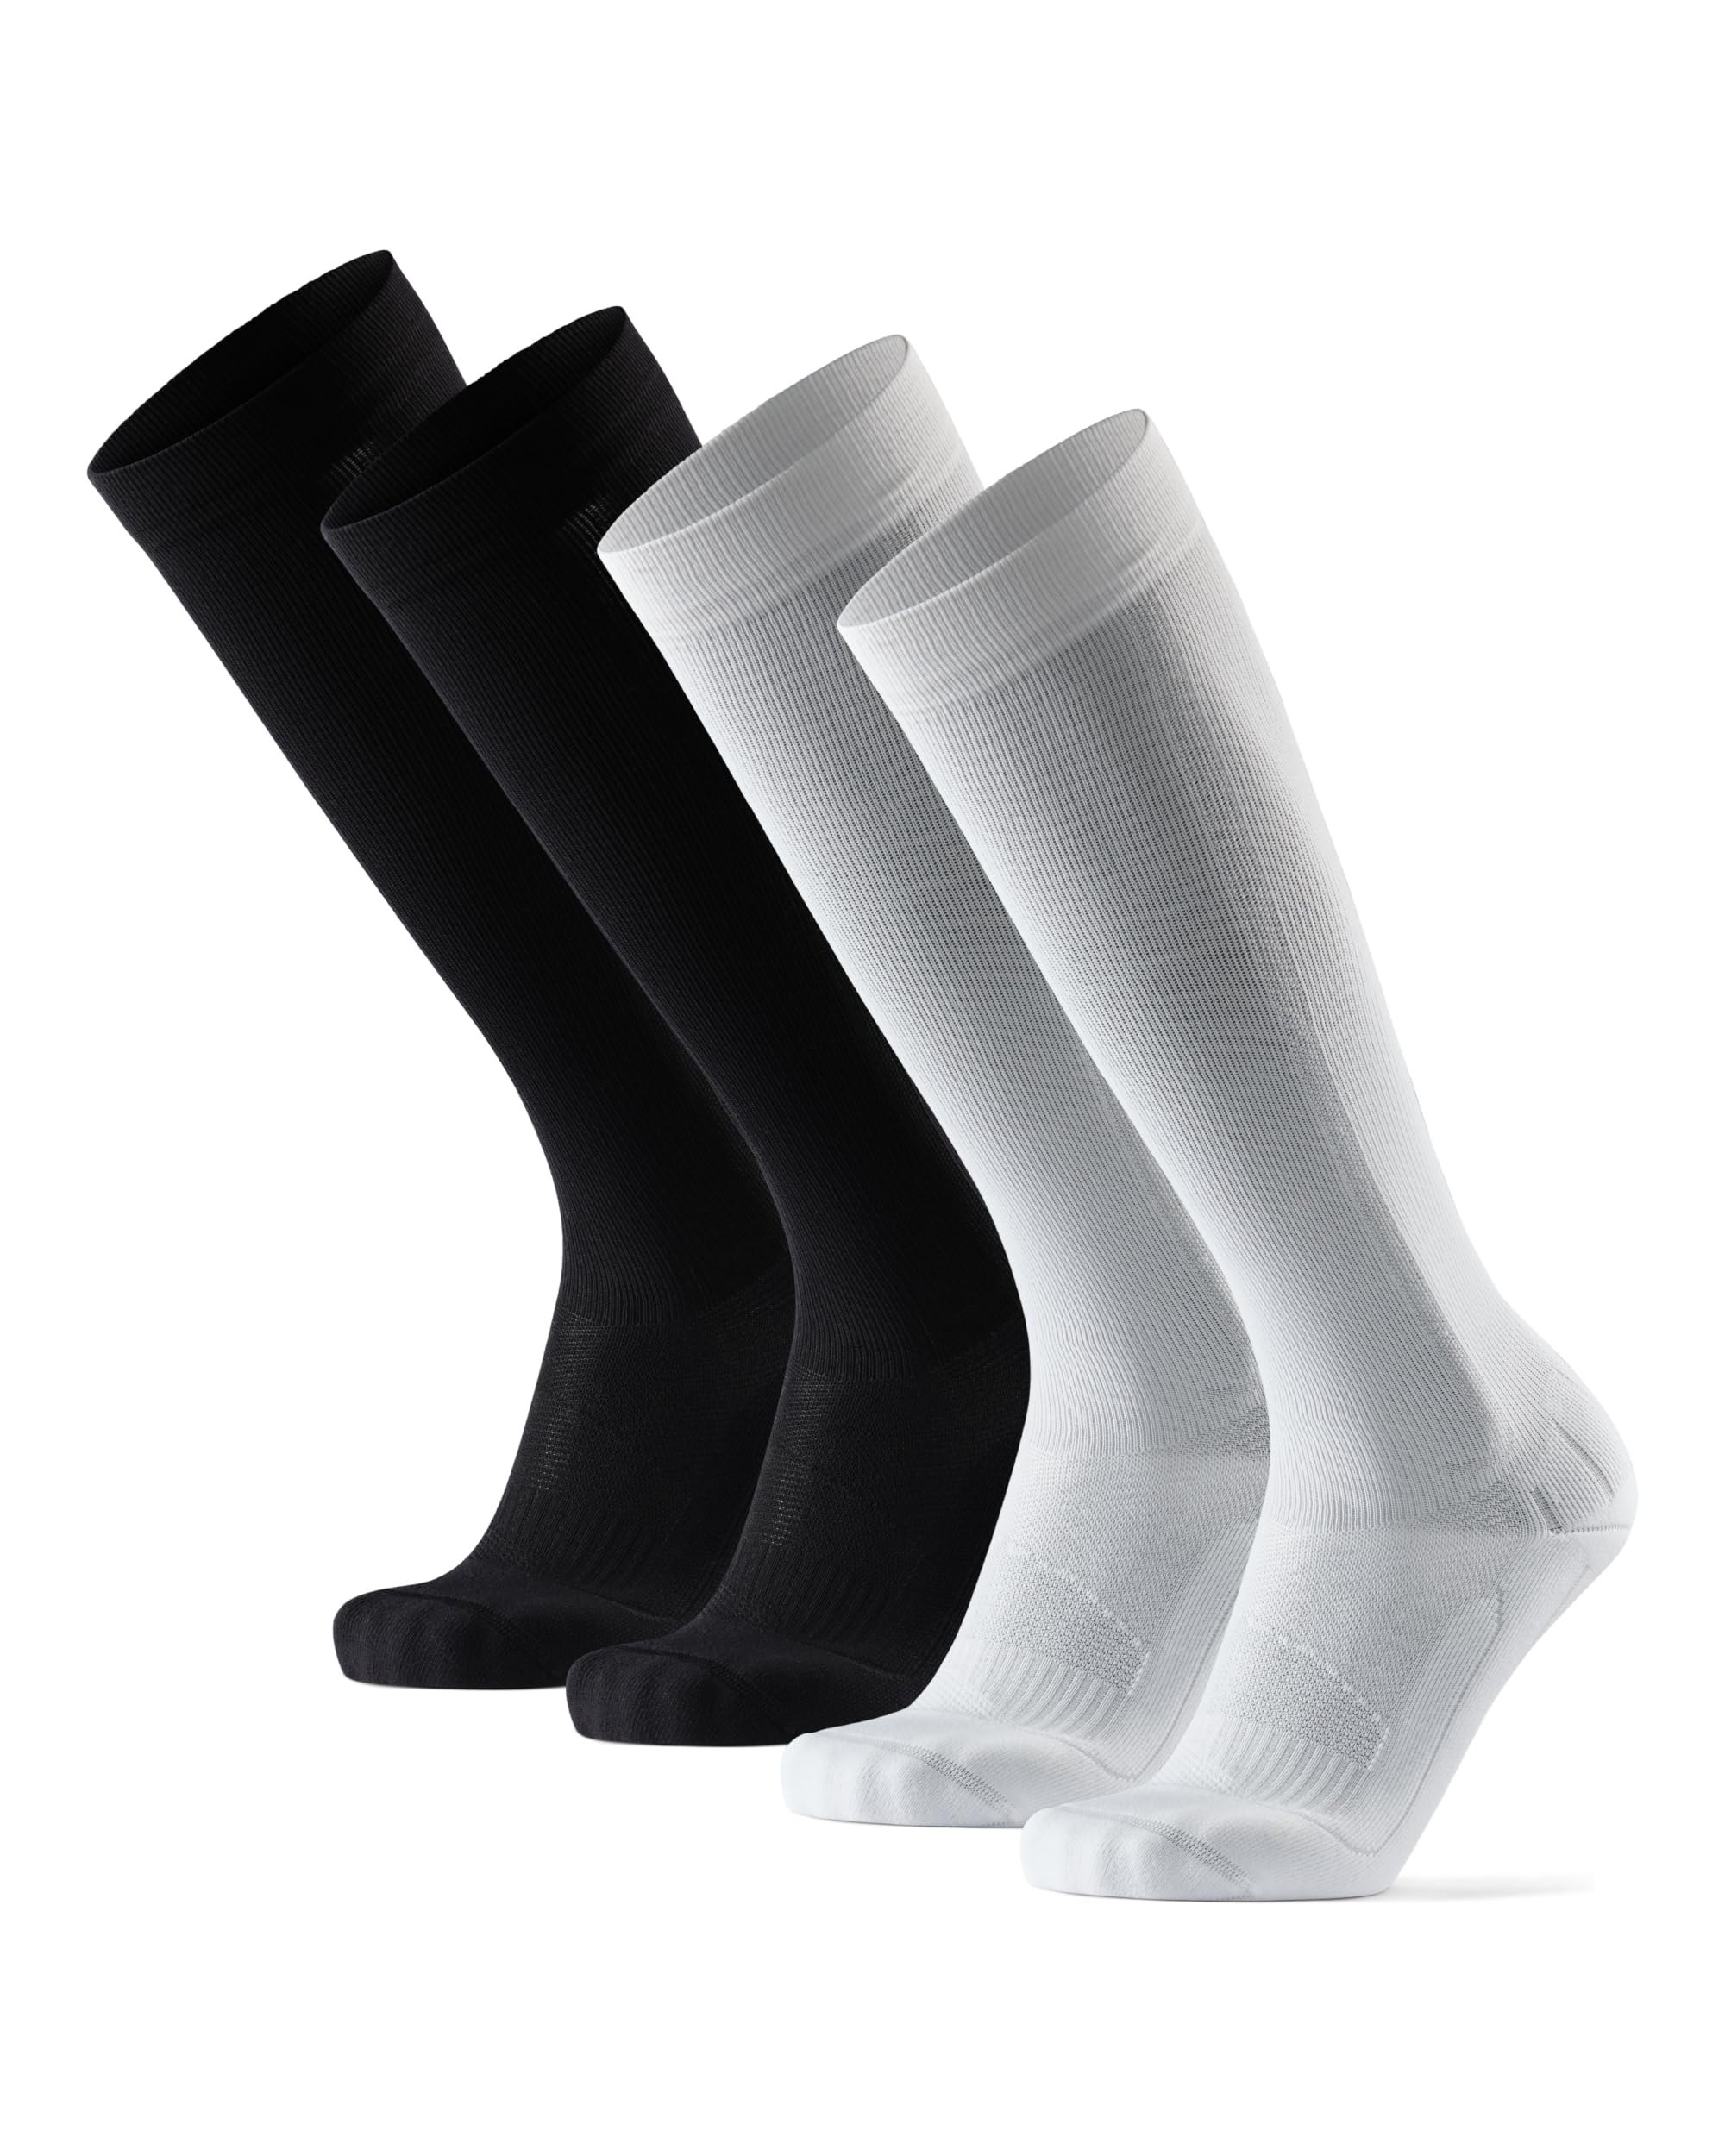 DANISH ENDURANCE Abgestufte Kompression Socken für Männer & Frauen 2 Paare (Mehrfarbig (1 x schwarz, 1 x weiß), EU 43-47)